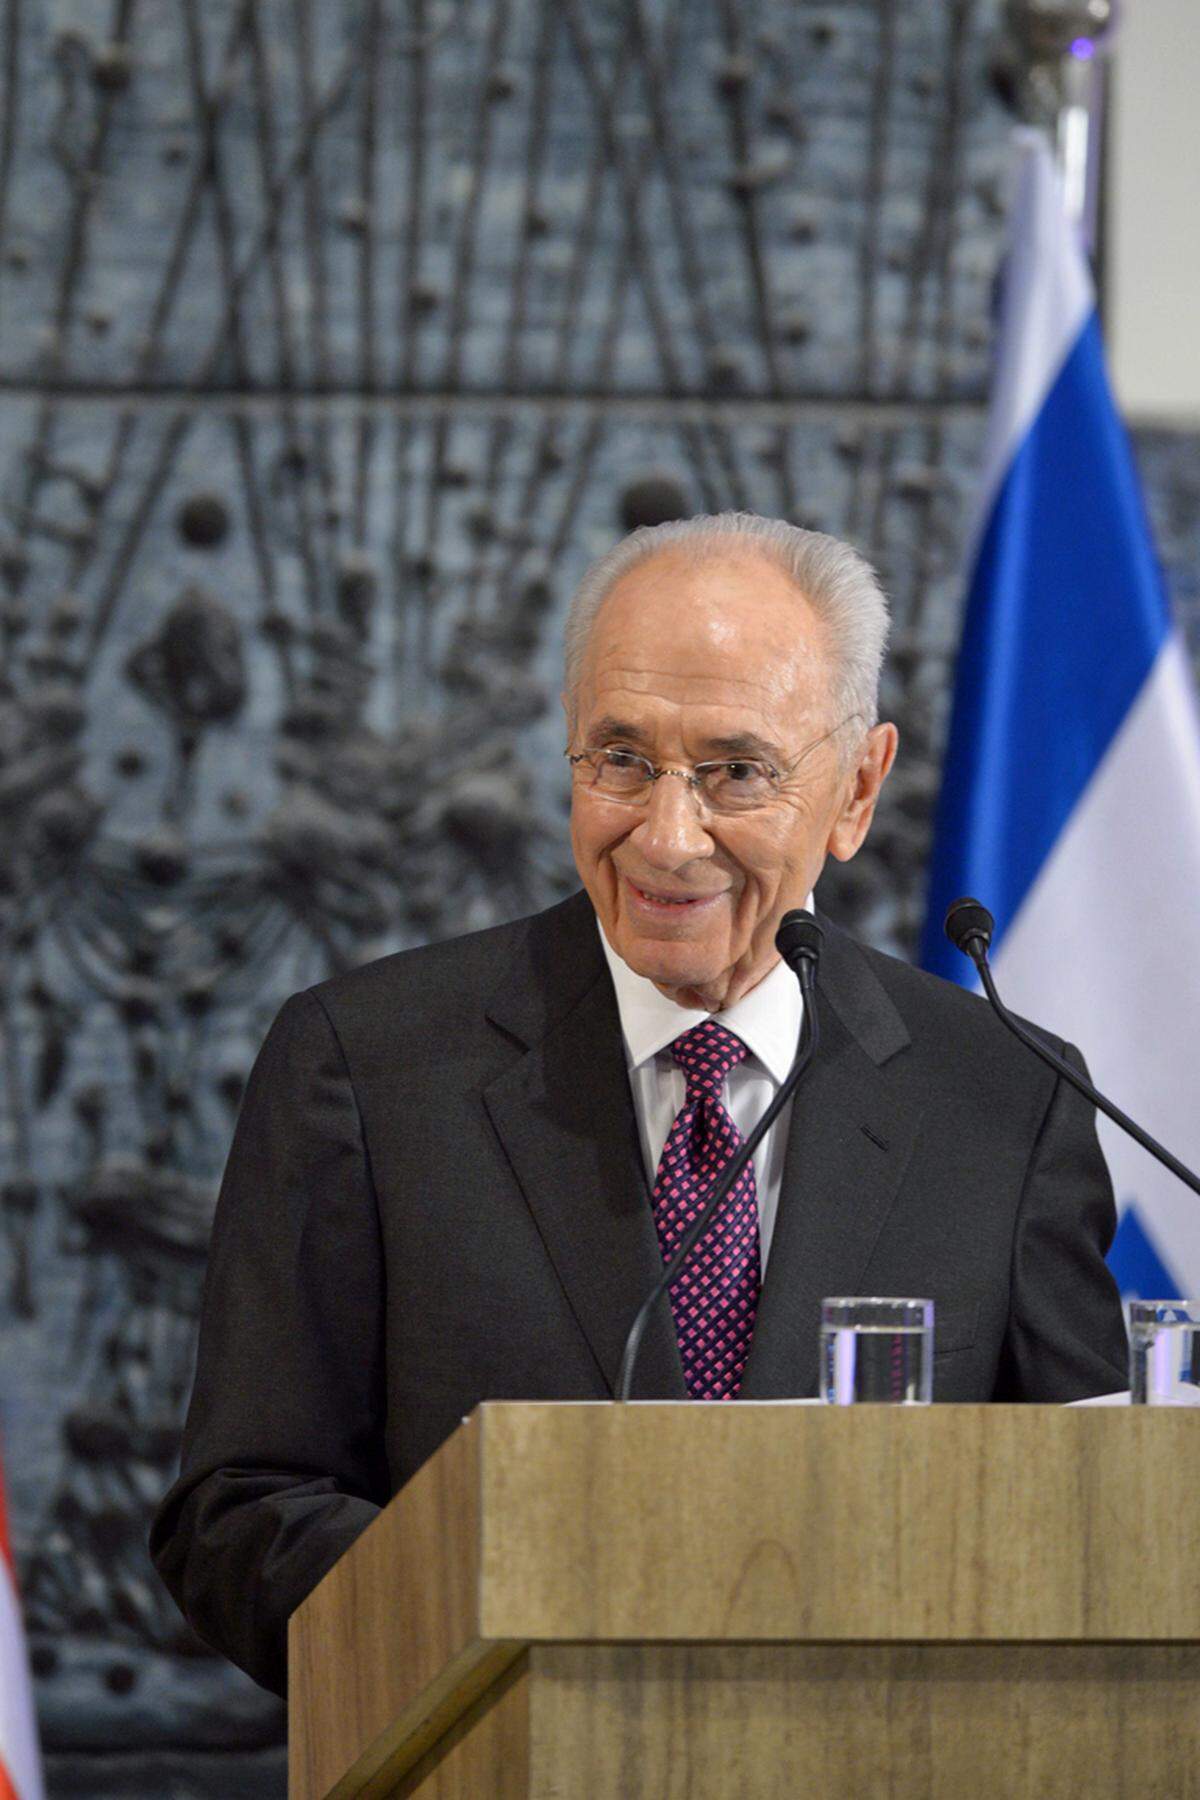 Der gegenwärtige Listenführer im weltweiten "Ältestenrat" ist Shimon Peres. Er ist aber nicht nur das älteste amtierende Staatsoberhaupt auf dem Globus, der vielfache Minister, mehrfache Regierungschef, Friedensnobelpreisträger und (seit 2007) nunmehrige Präsident Israels gehört auch zu den angesehensten Staatsoberhäuptern. Er feiert am 2. August seinen 90. Geburtstag, seine Amtszeit endet im Juli 2014, eine zweite Amtszeit sieht die Verfassung Israels nicht vor.